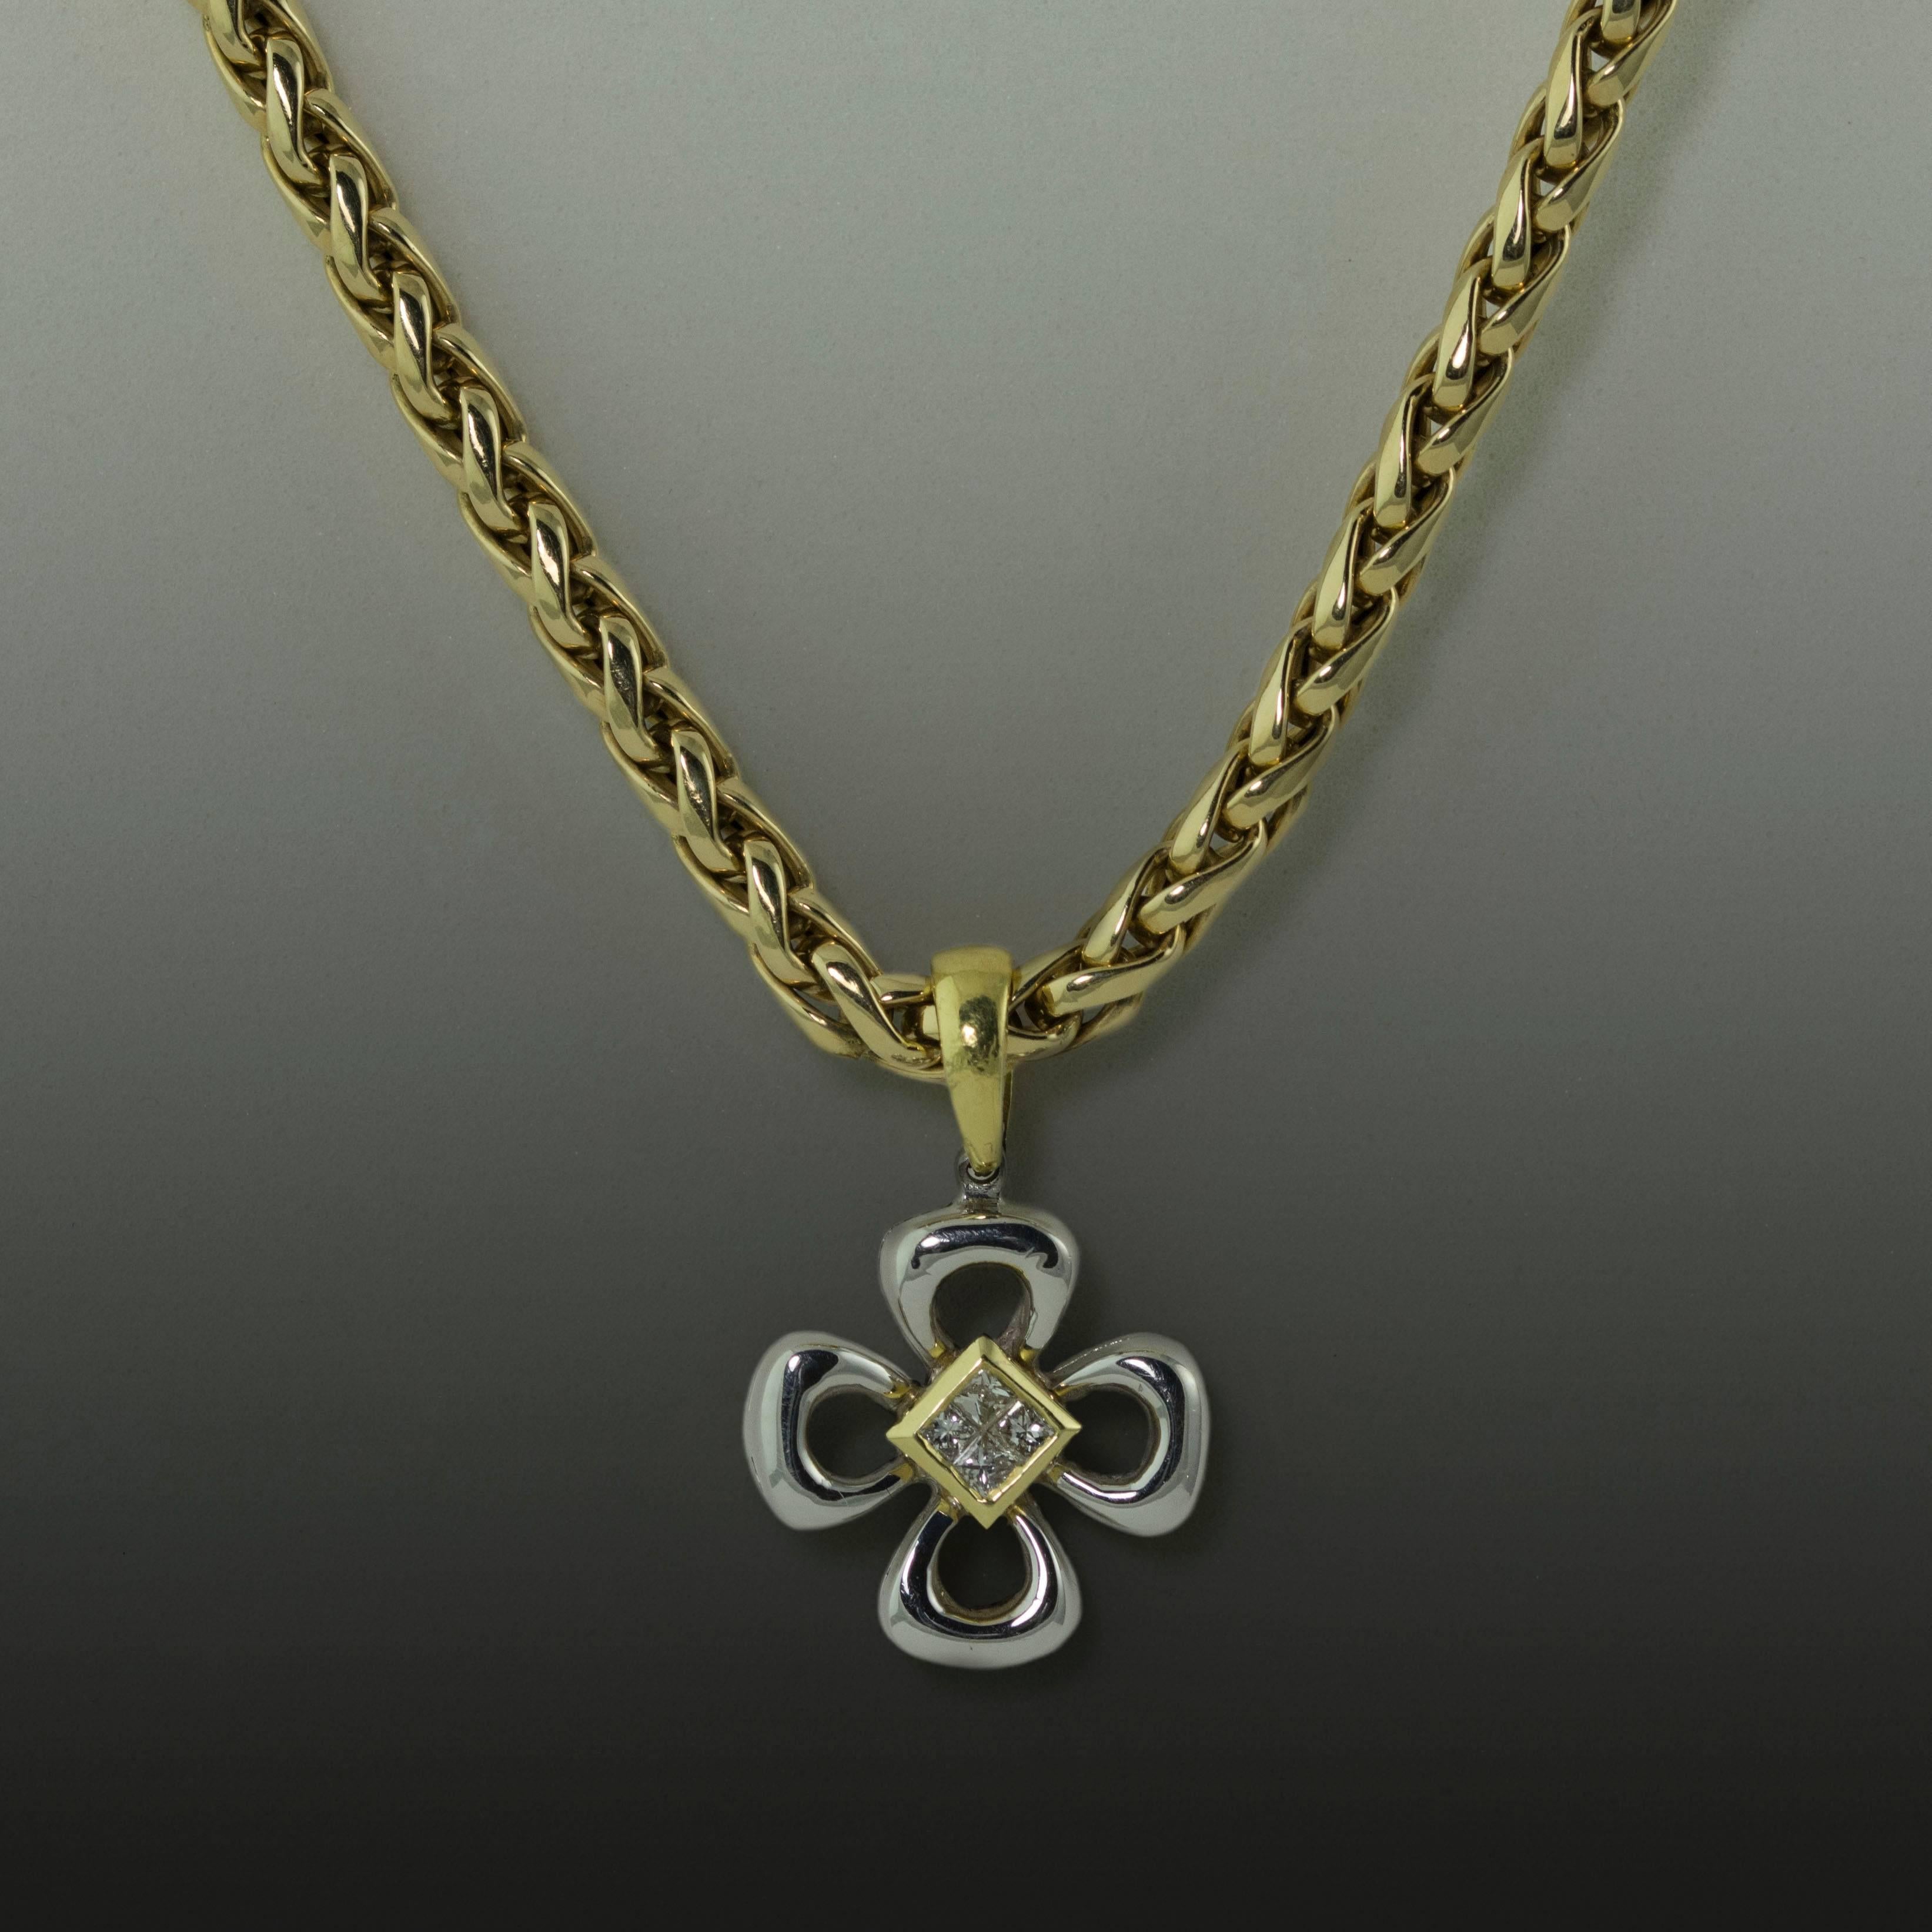 14K Necklace with 4 Princess Cut Diamonds Weighing 0.20 Carats. 